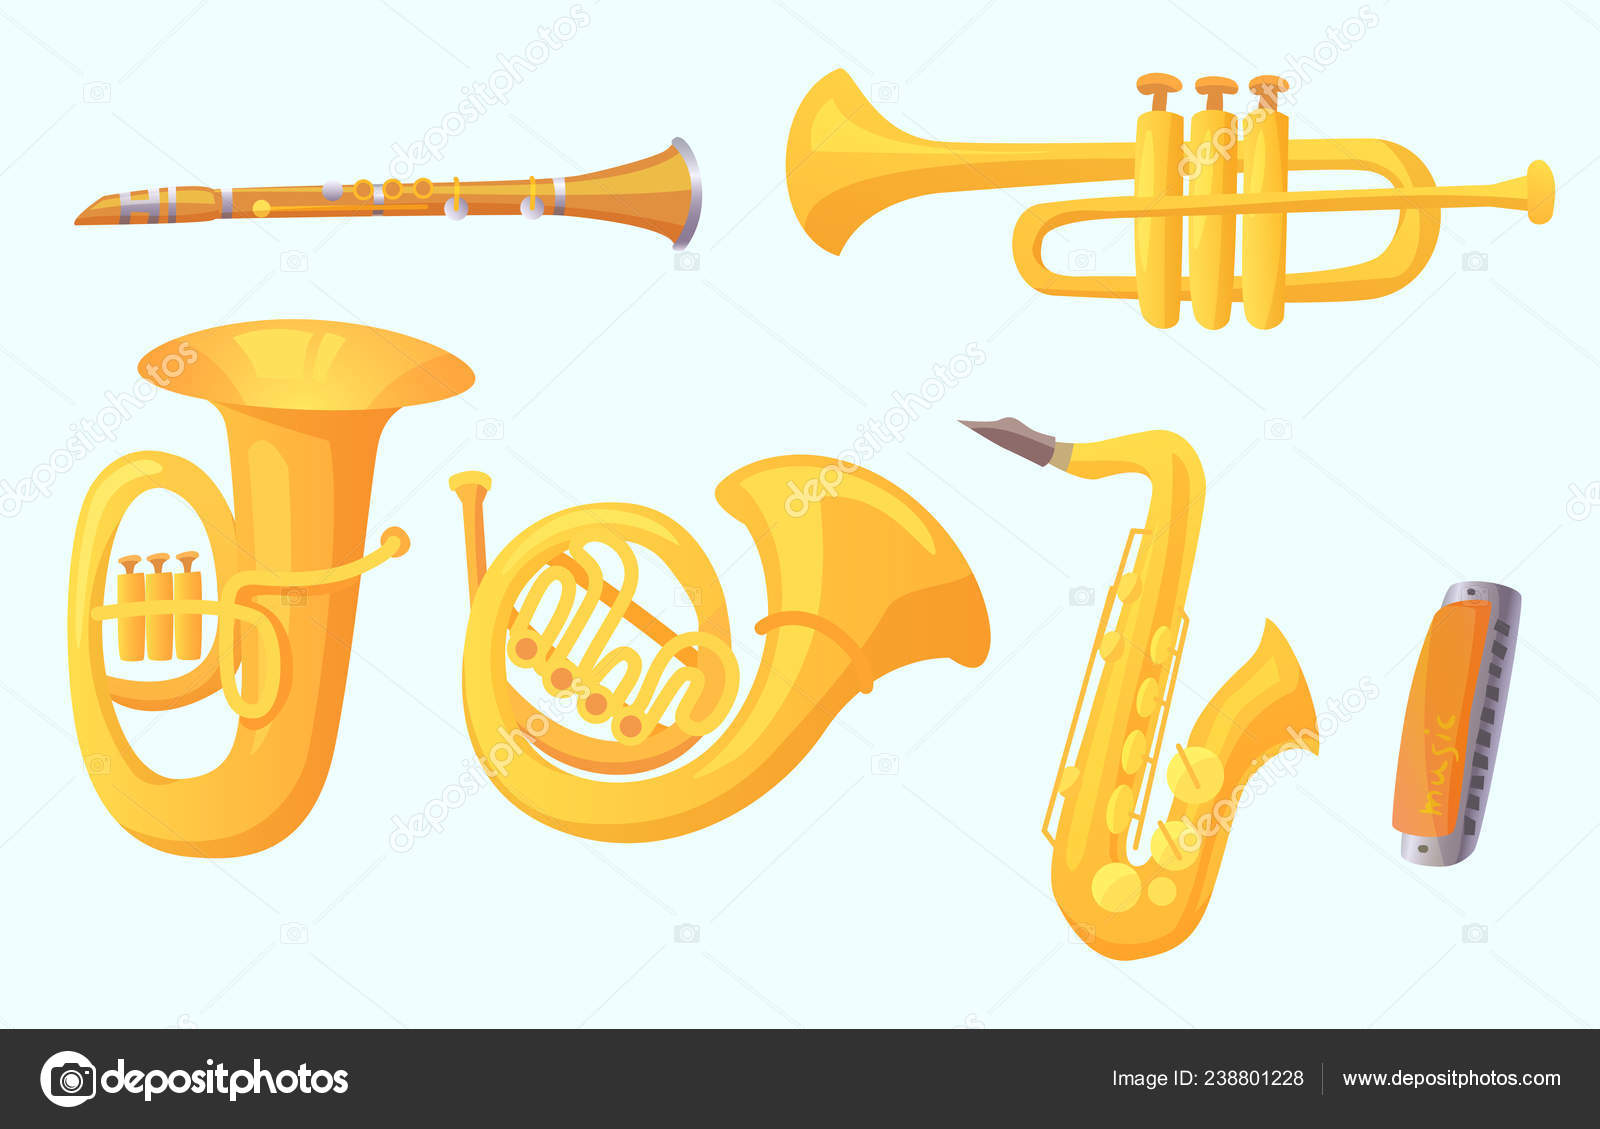 Instrument à Vent Musical Saxophone. Instrument Musical Pour Jouer